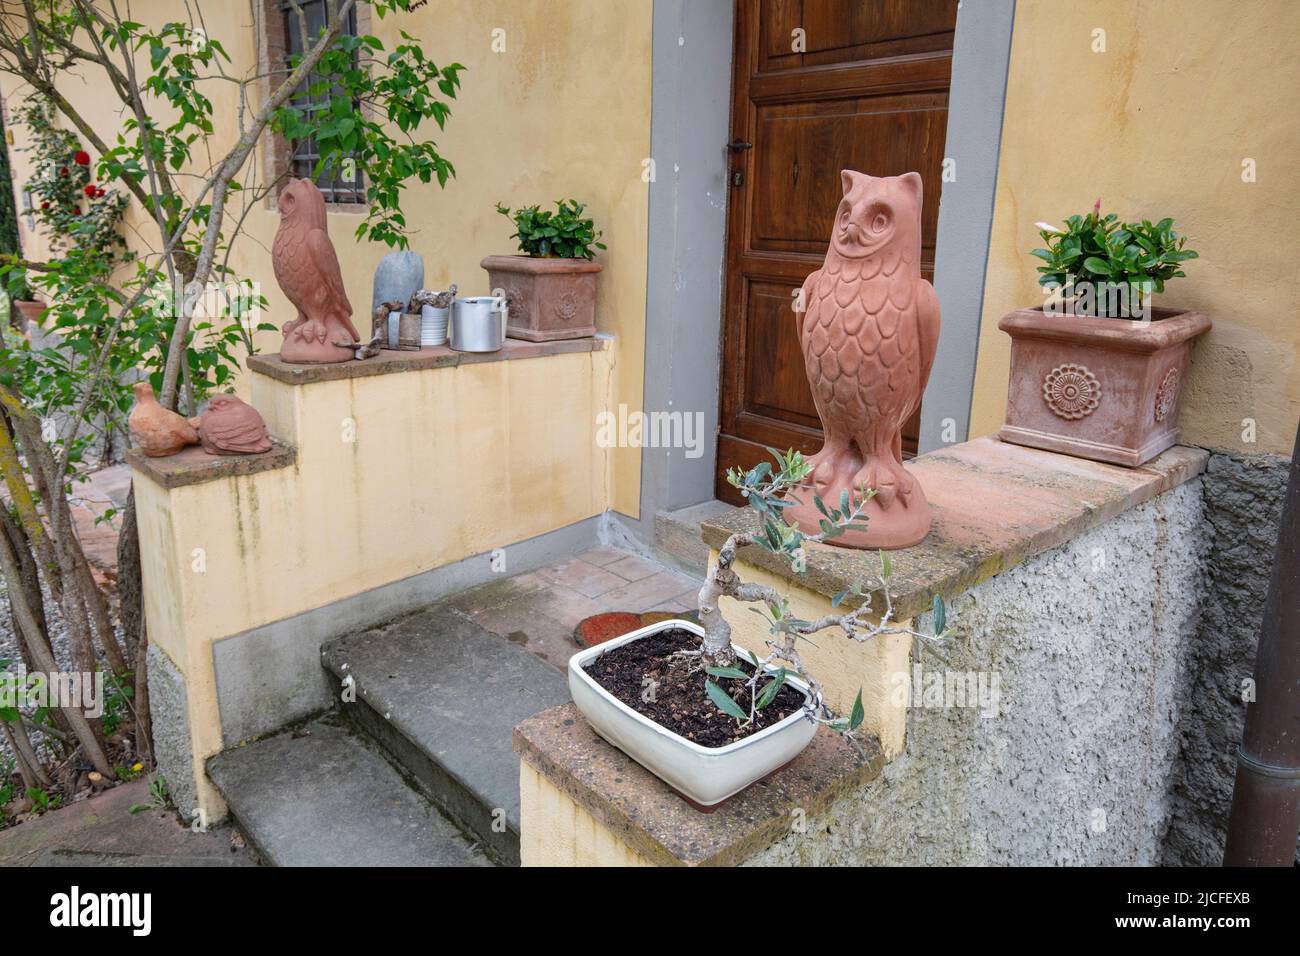 Italieb, Toscane, personnages en terre cuite devant une entrée de maison Banque D'Images